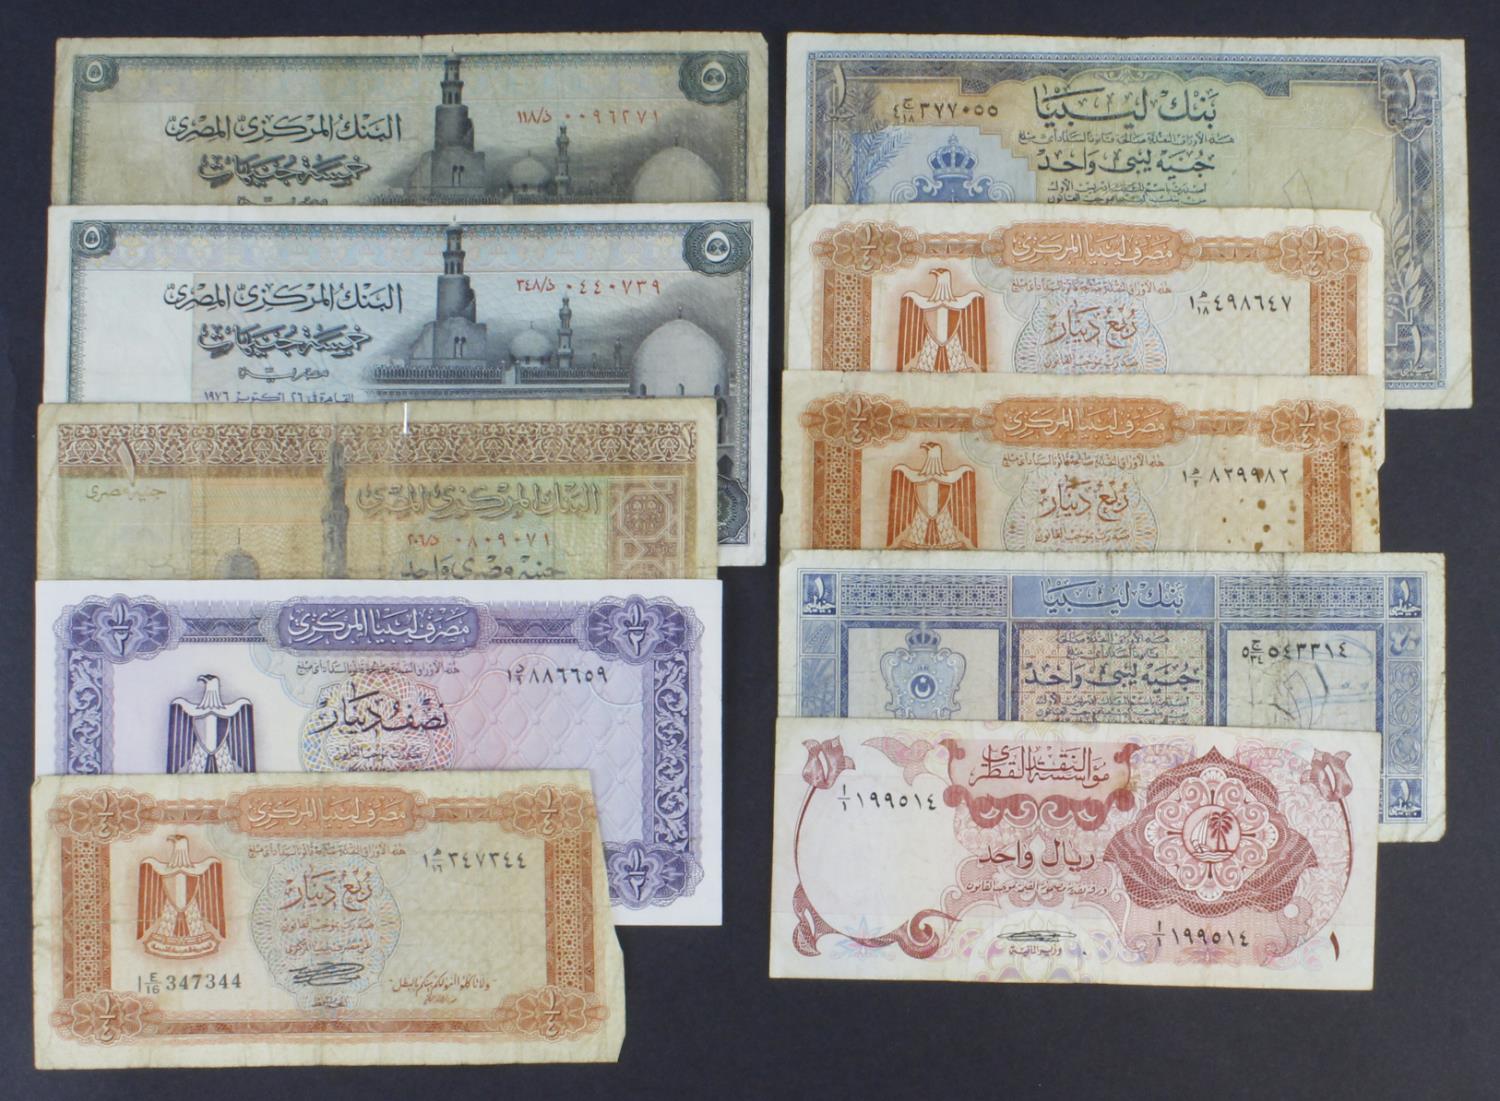 World, Middle East & North Africa (10), Qatar 1 Riyal 1973, Libya 1 Pound 1963 First Issue, Libya